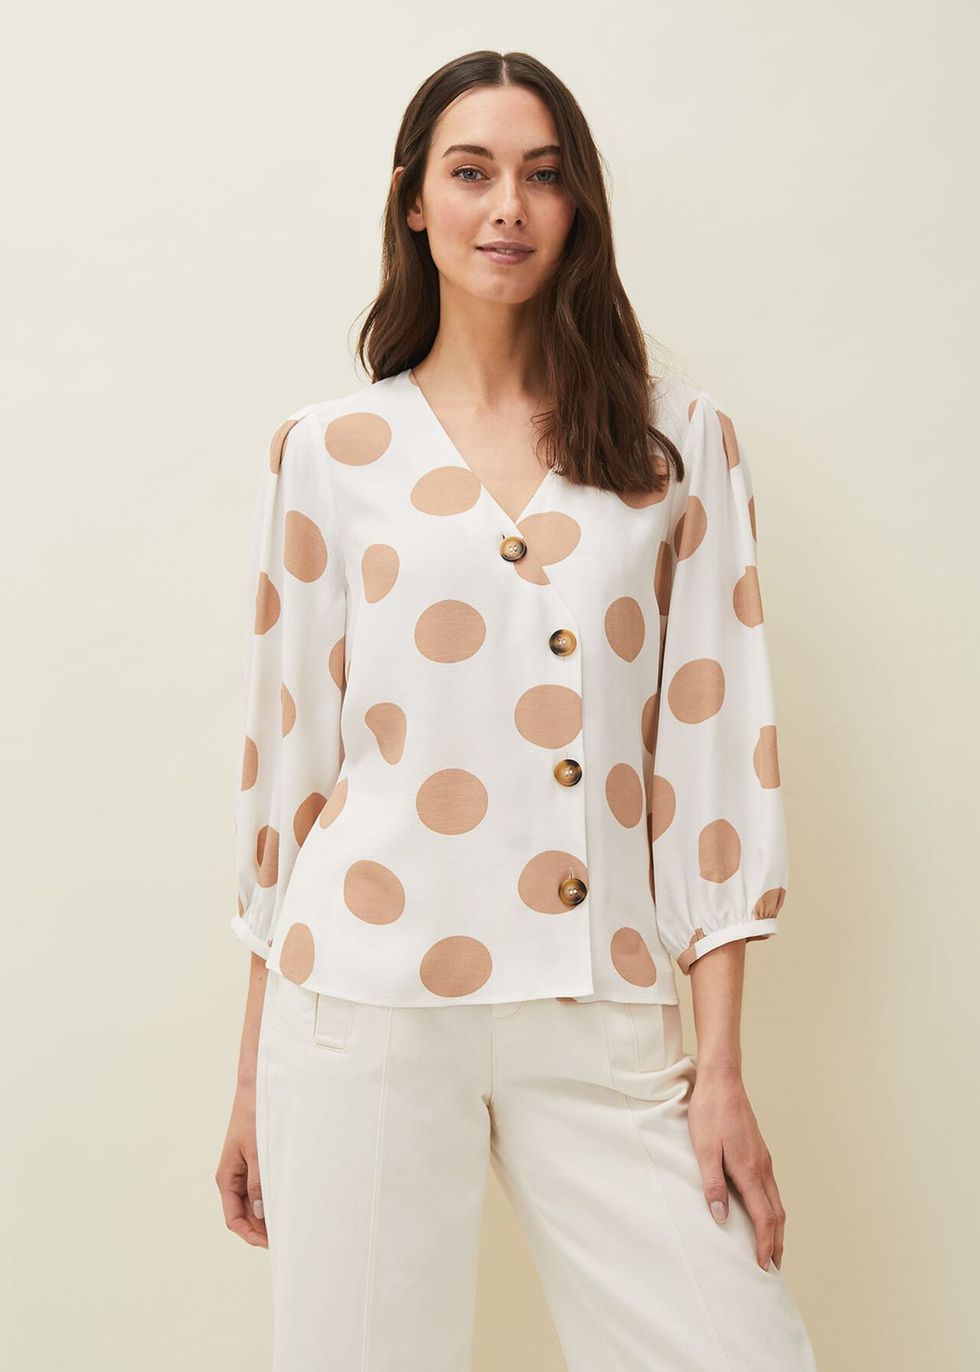 Mango Polka-dot blouse  Polka dot blouse, White short sleeve blouse, White short  sleeve tops